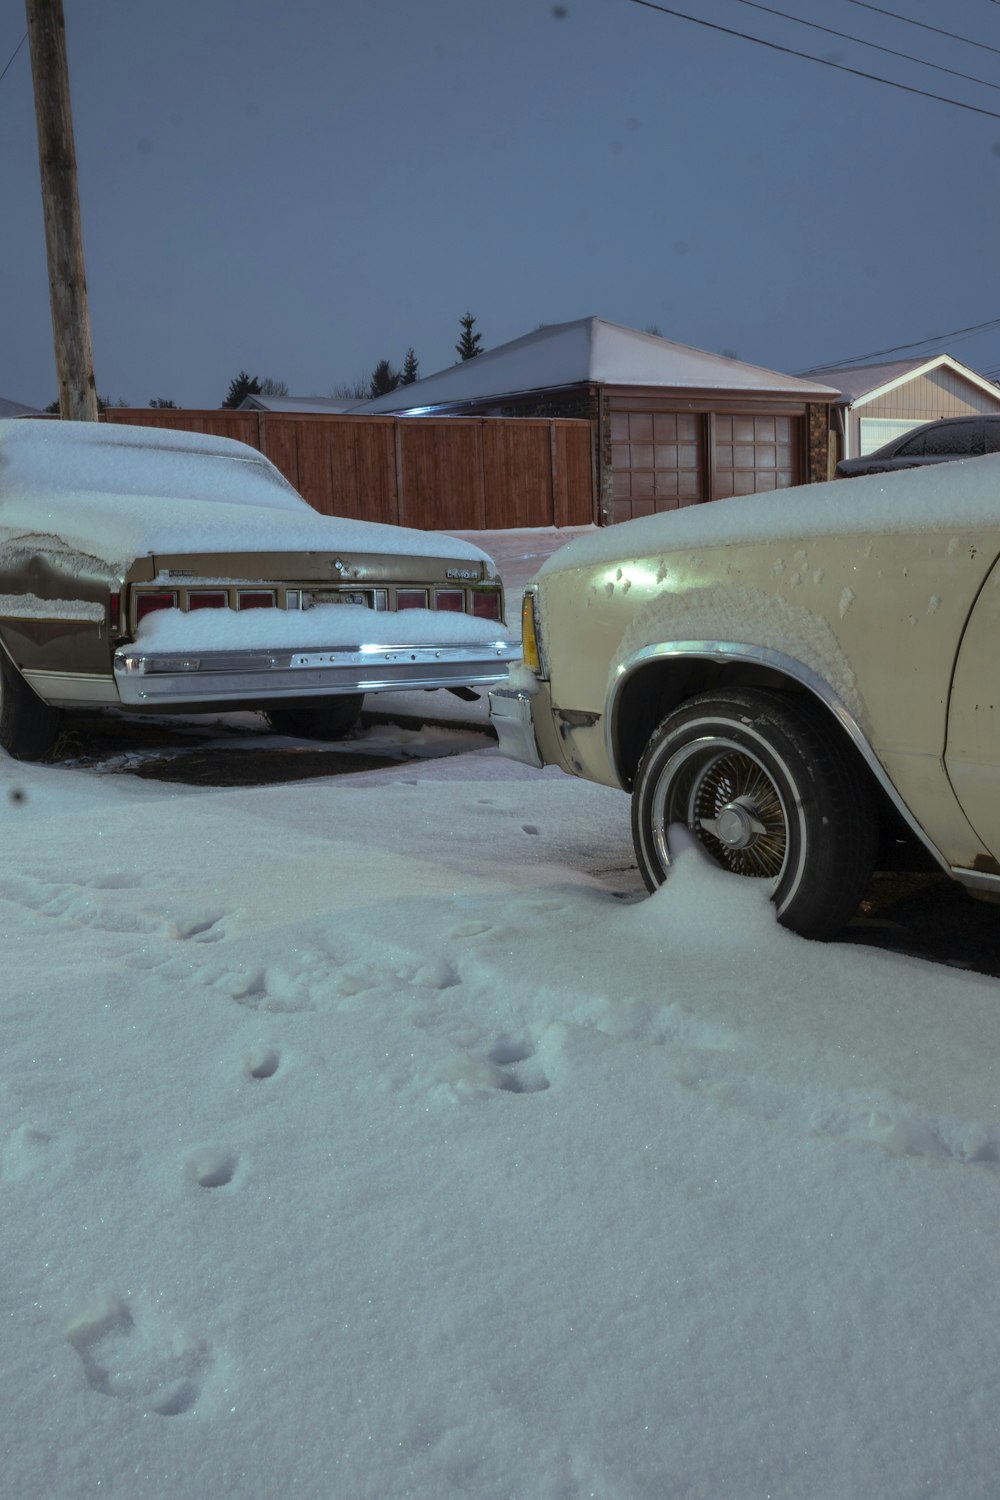 une voiture garée dans la neige à côté d’une autre voiture